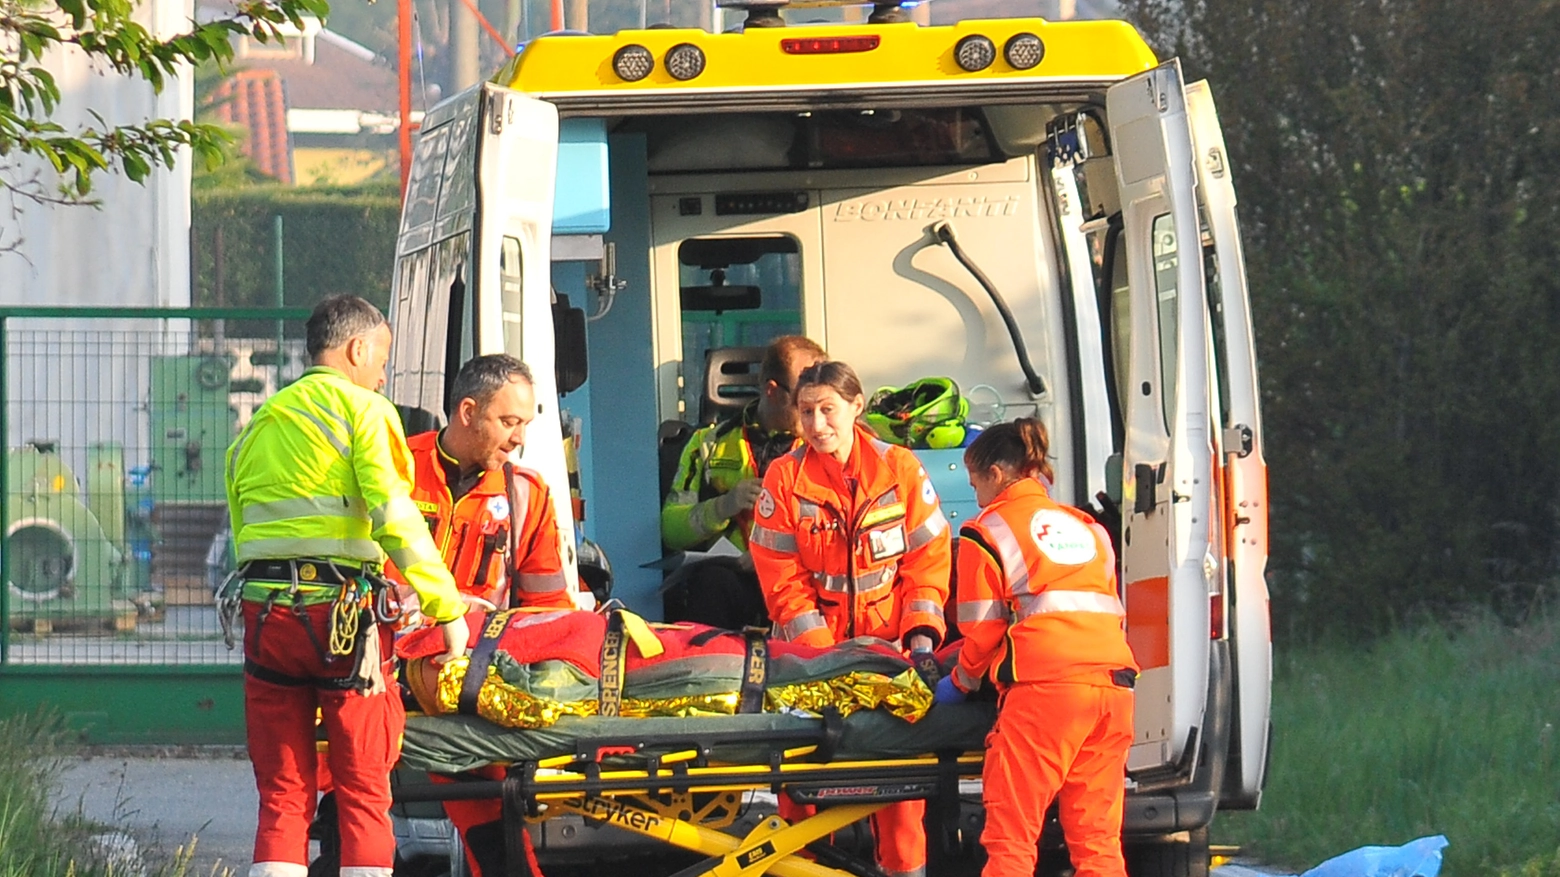 L'intervento dei soccorritori non ha salvato la vita al 45enne